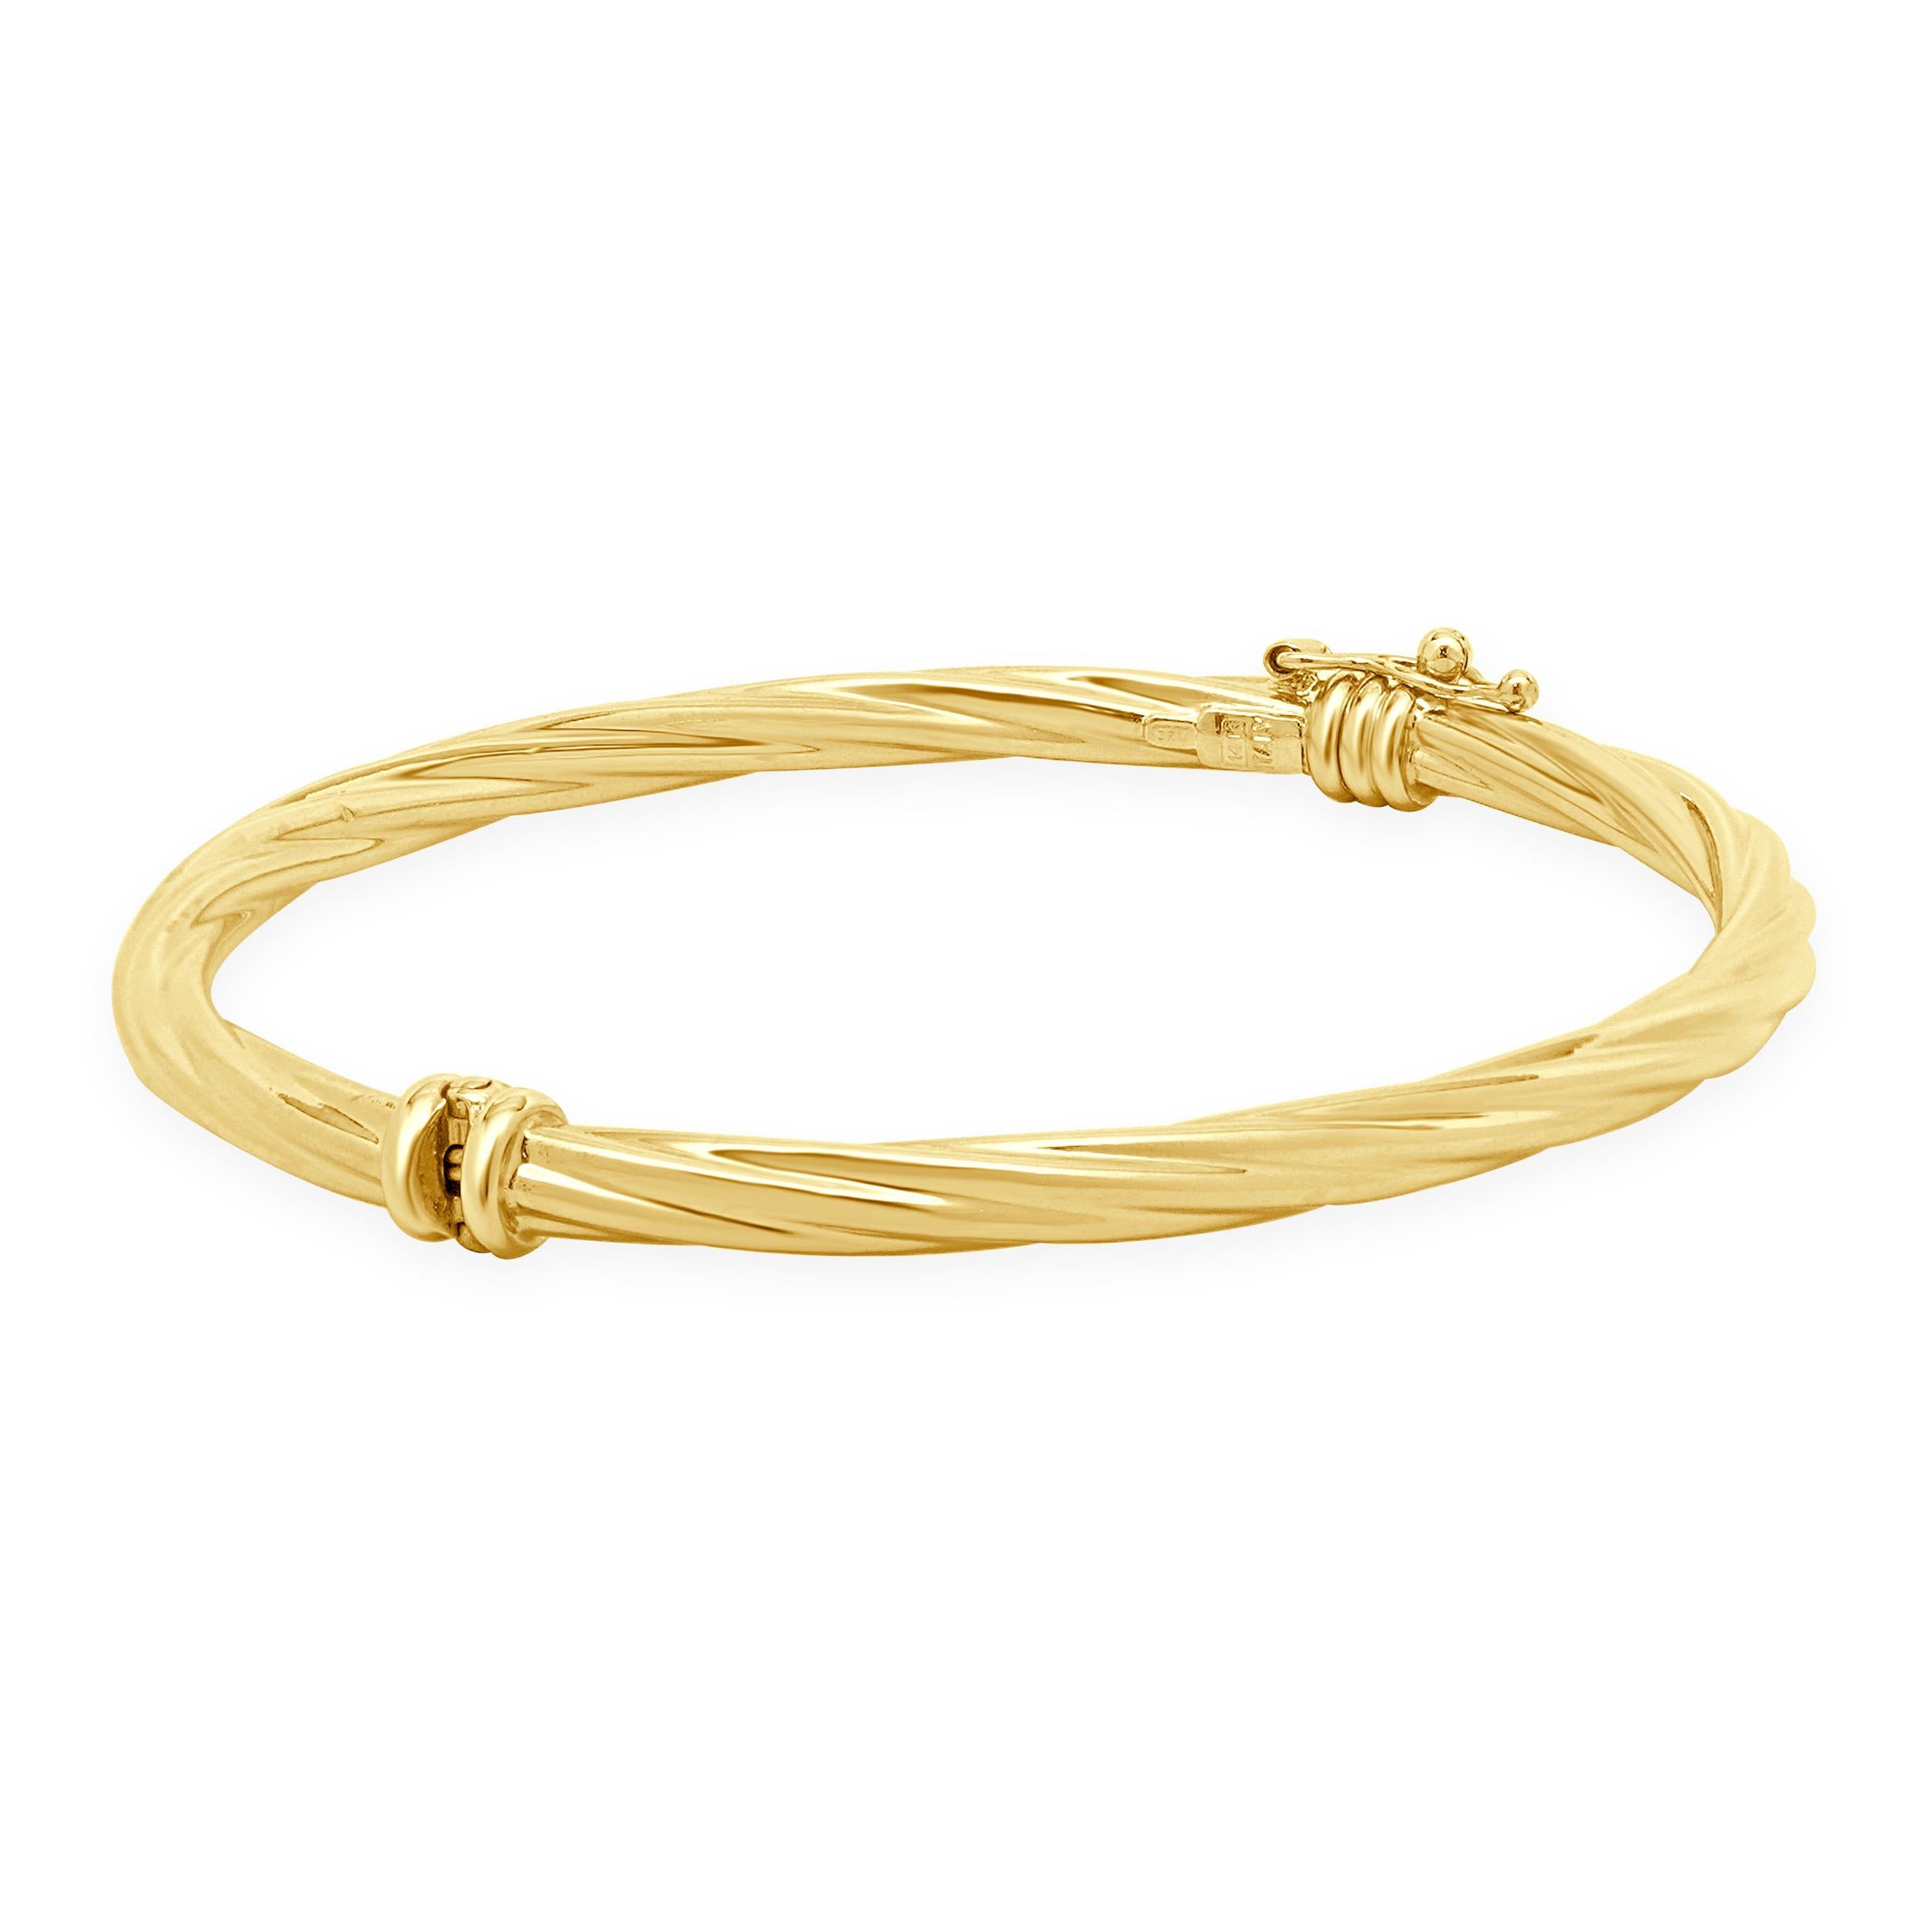 Matériau : Or jaune 14K
Dimensions : le bracelet convient à un poignet de 7 pouces maximum.
Poids : 5,47 grammes
